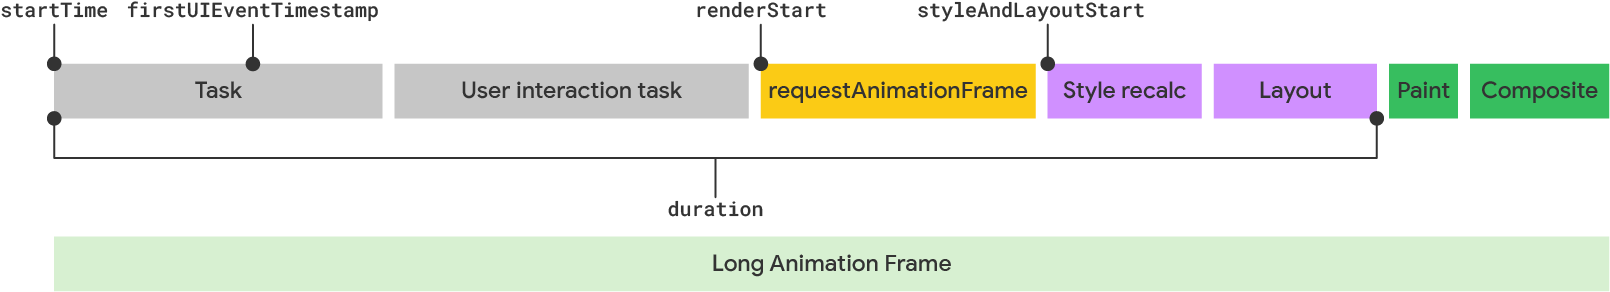 LoAF モデルによる長いアニメーション フレームの可視化。